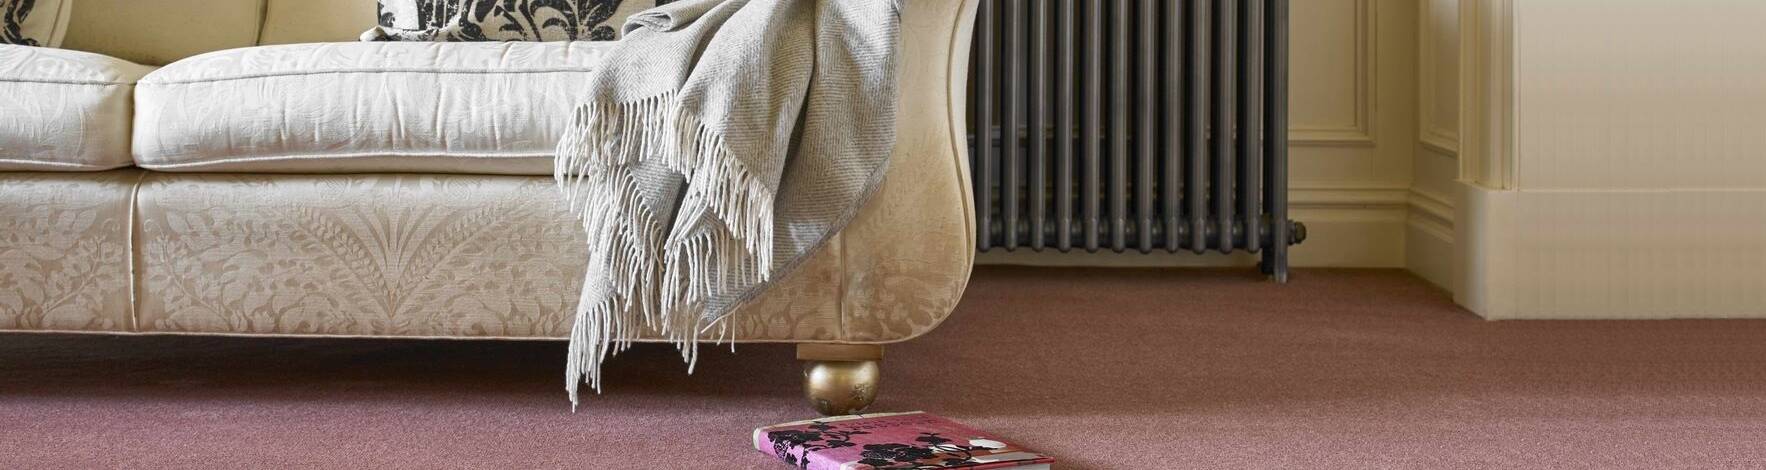 Carpet Flooring Journal Linney Cooper